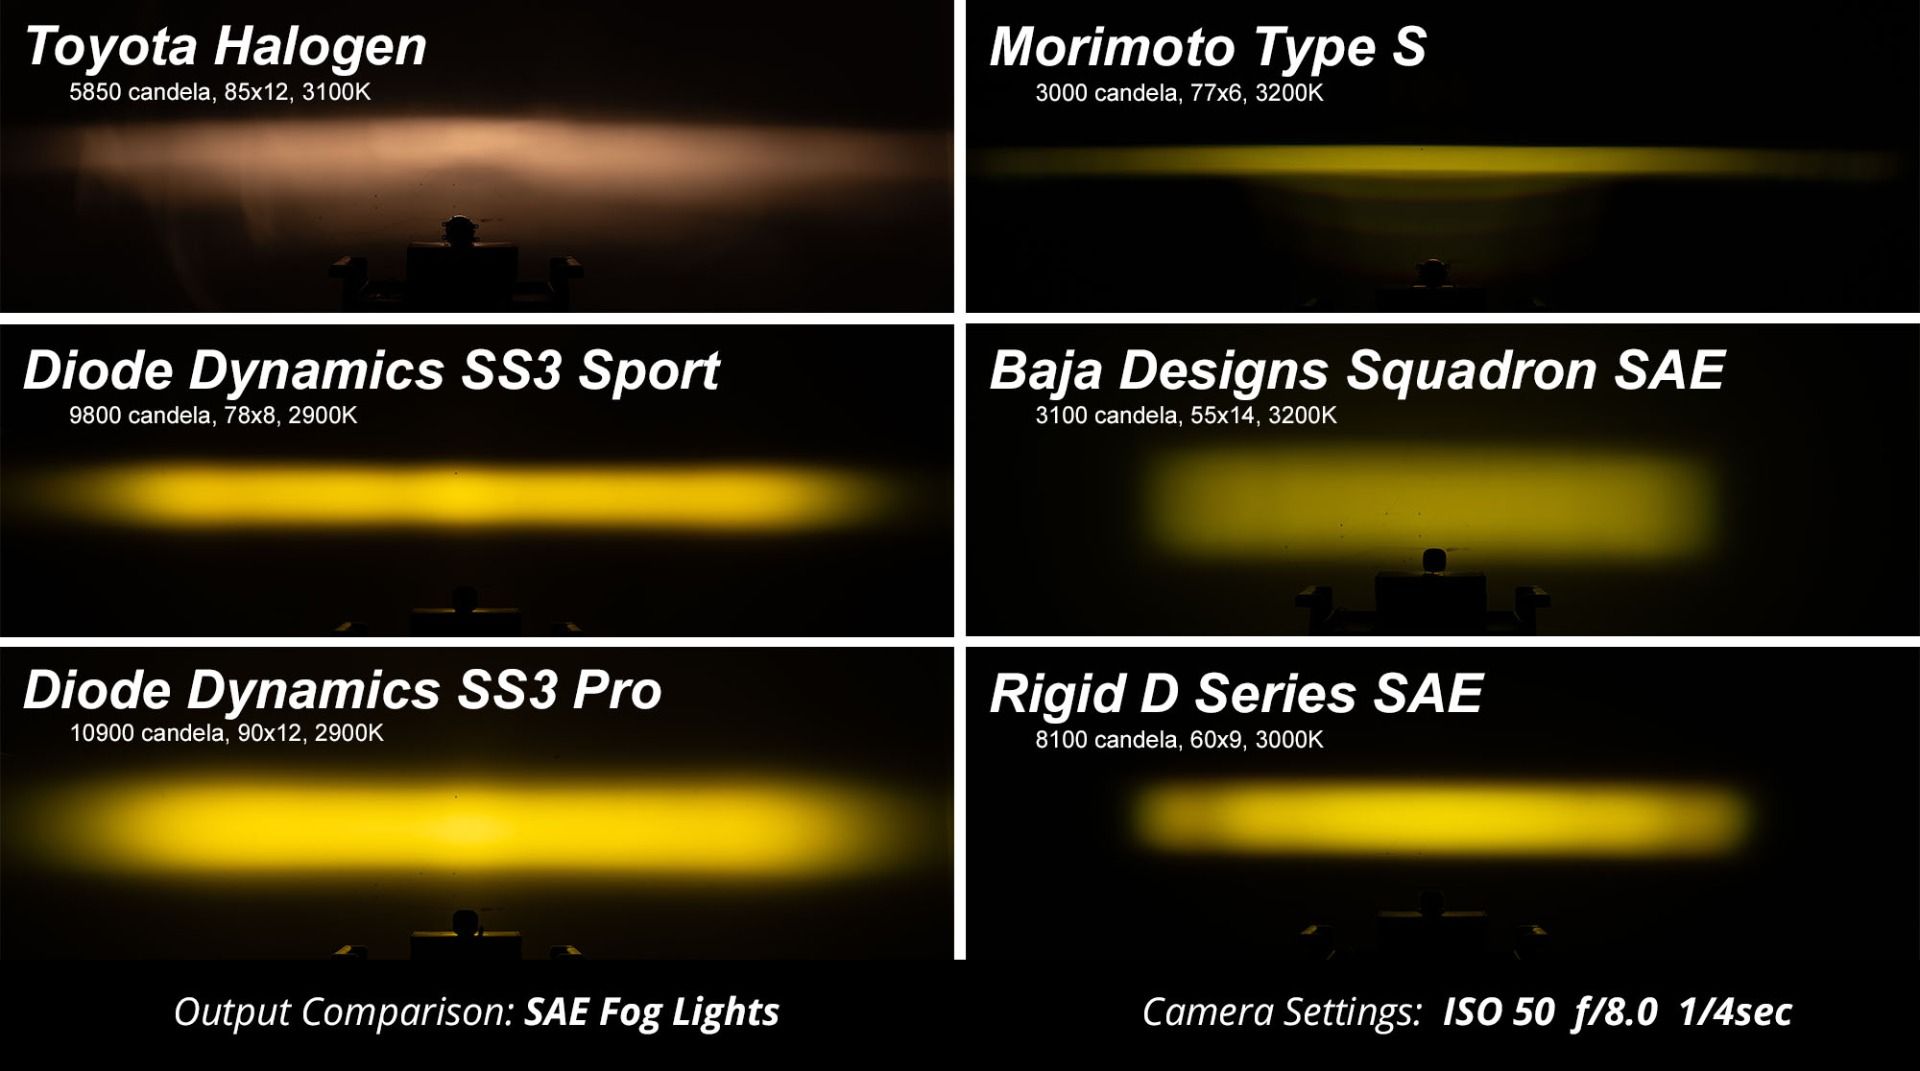 SS3 LED Fog Light Kit For 2007-2014 GMC Sierra 2500/3500